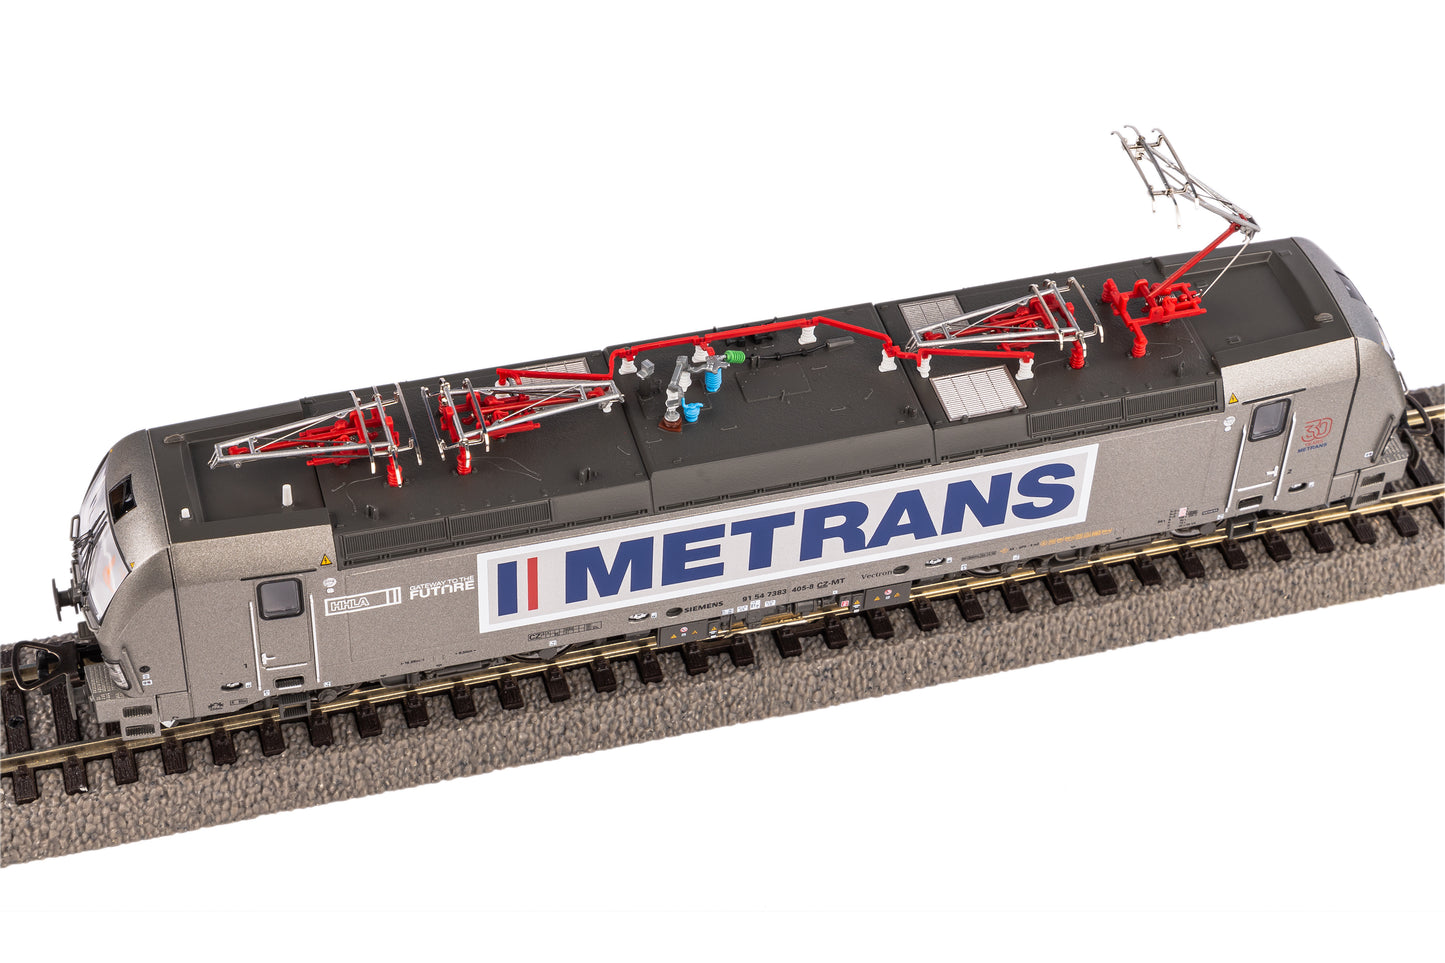 Piko 21605 - Vectron Electric Locomotive Metrans VI